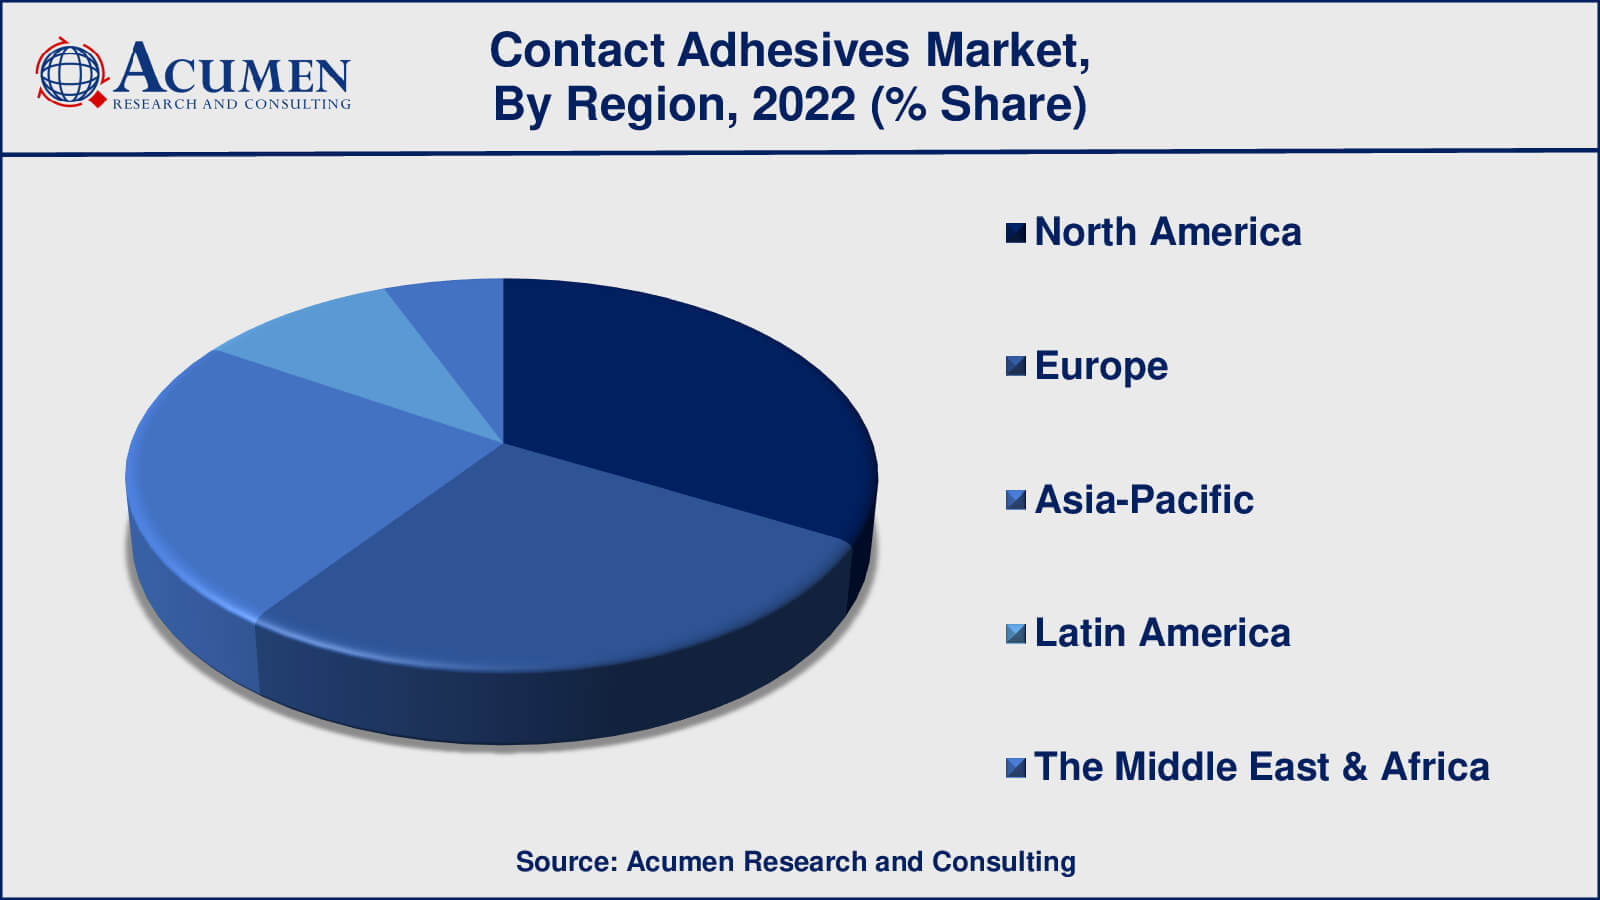 Contact Adhesives Market Drivers